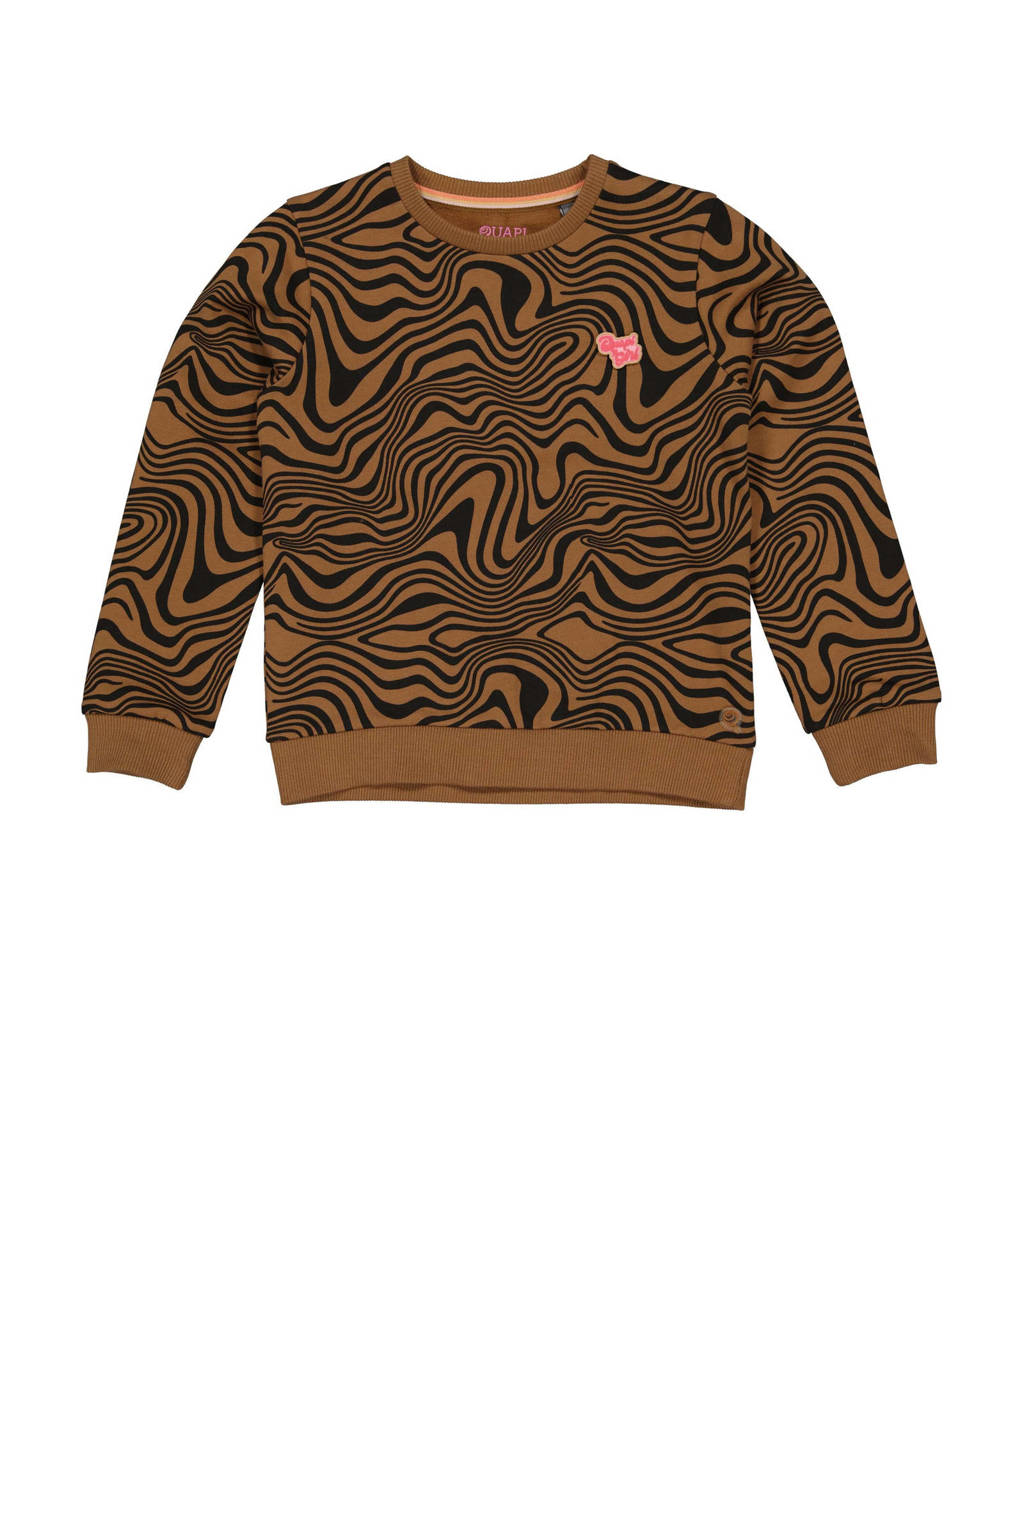 sweater AMARA met all over print bruin/zwart